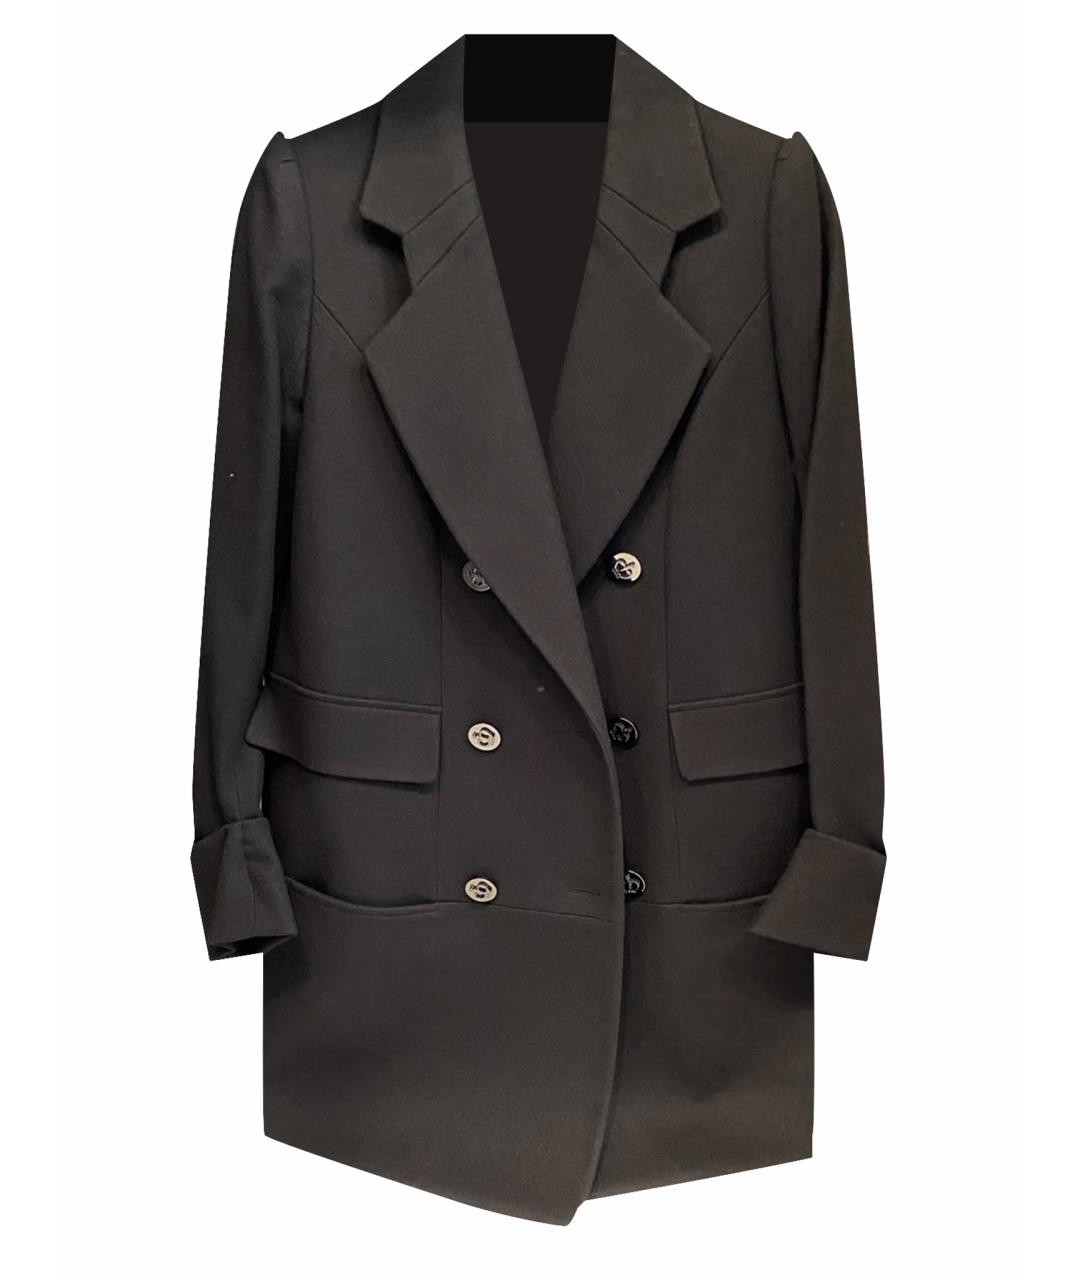 IRFE Черное шерстяное пальто, фото 1